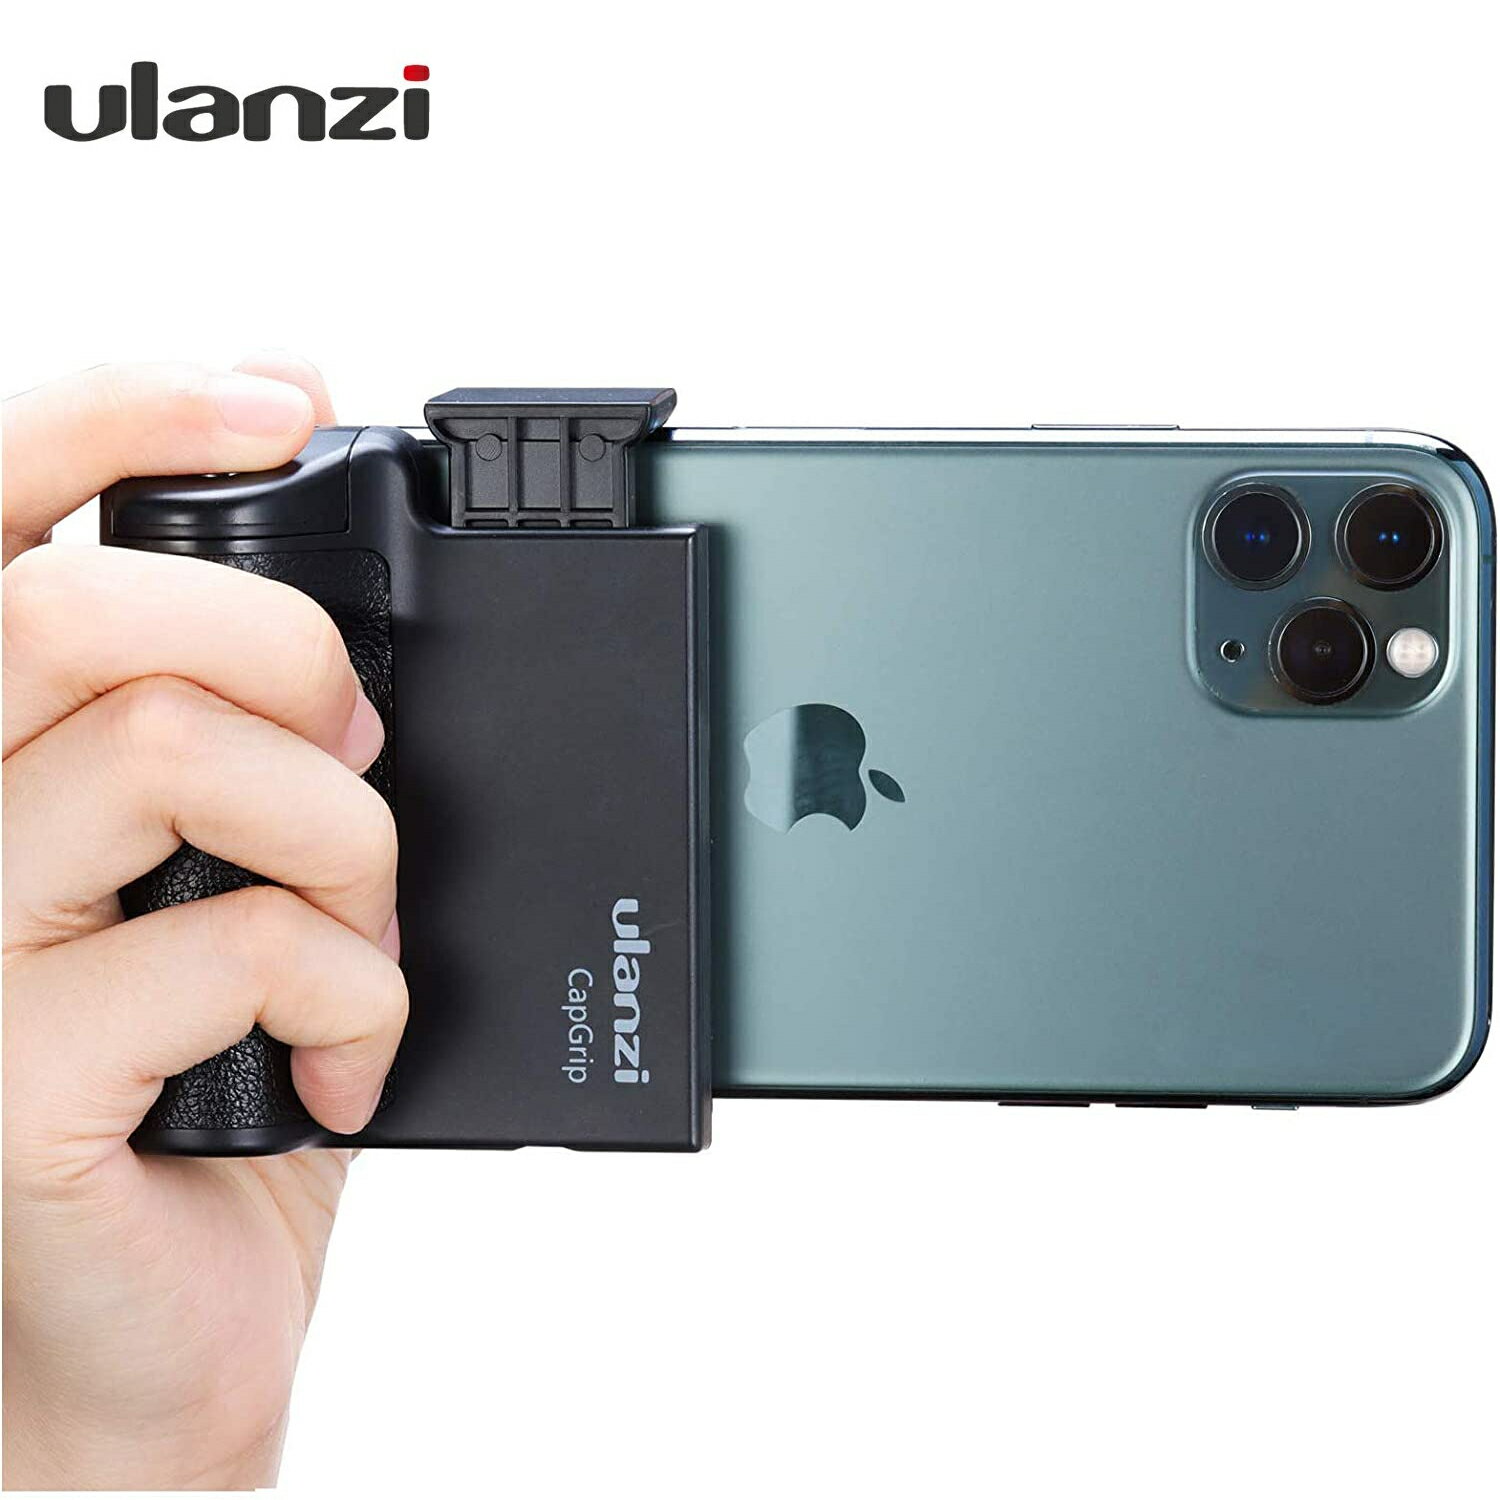 ULANZI Bluetooth スマートフォンホルダー ラバーハンドルグリップ シャッター スタンド ワイヤレスリモコン付き カメラグリップ 取付可能 旅行 写真 動画を撮る 1/4インチネジ 自撮り棒 iPhone Android アイフォン アンドロイド 定形外郵便